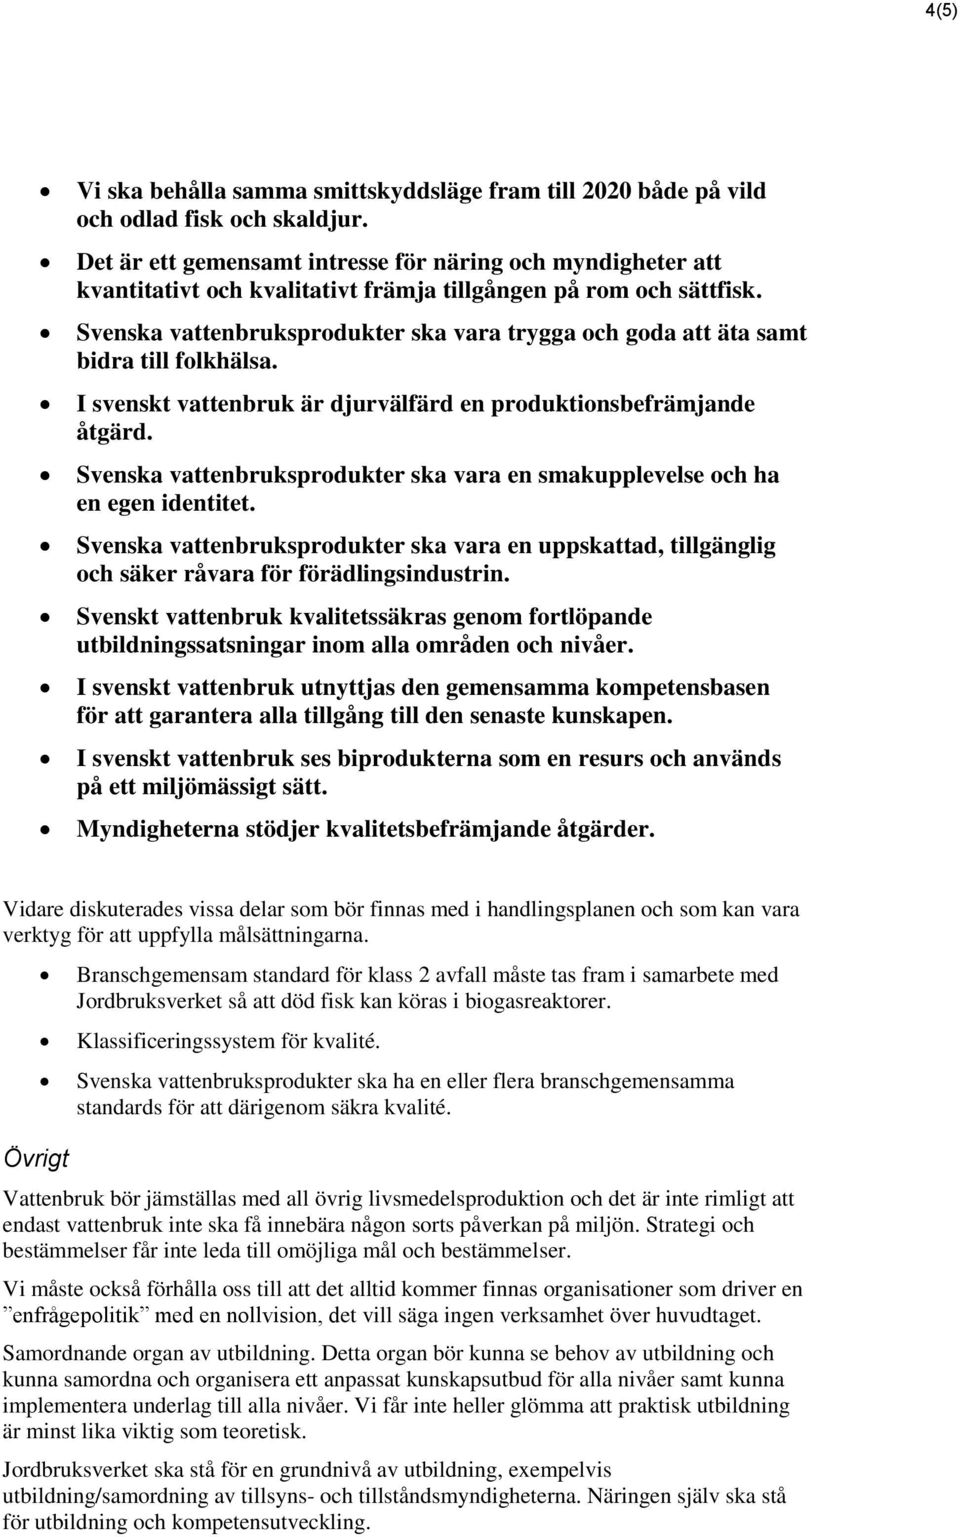 Svenska vattenbruksprodukter ska vara trygga och goda att äta samt bidra till folkhälsa. I svenskt vattenbruk är djurvälfärd en produktionsbefrämjande åtgärd.